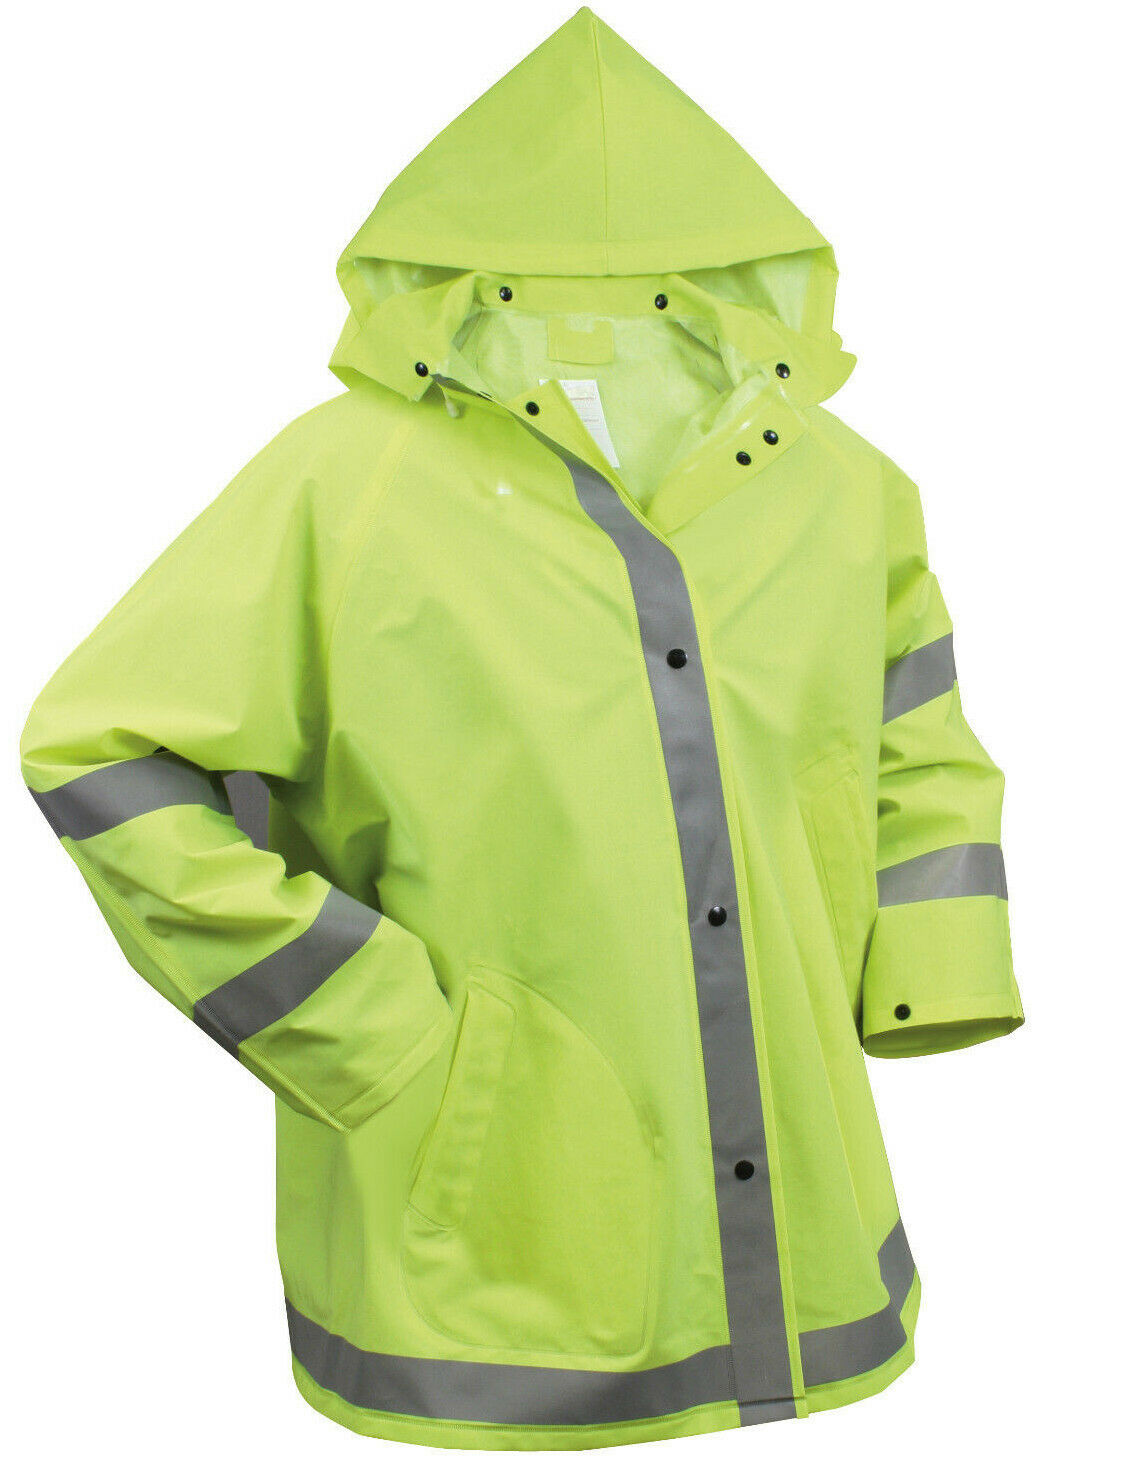 Rothco Safety Reflective Rain Jacket